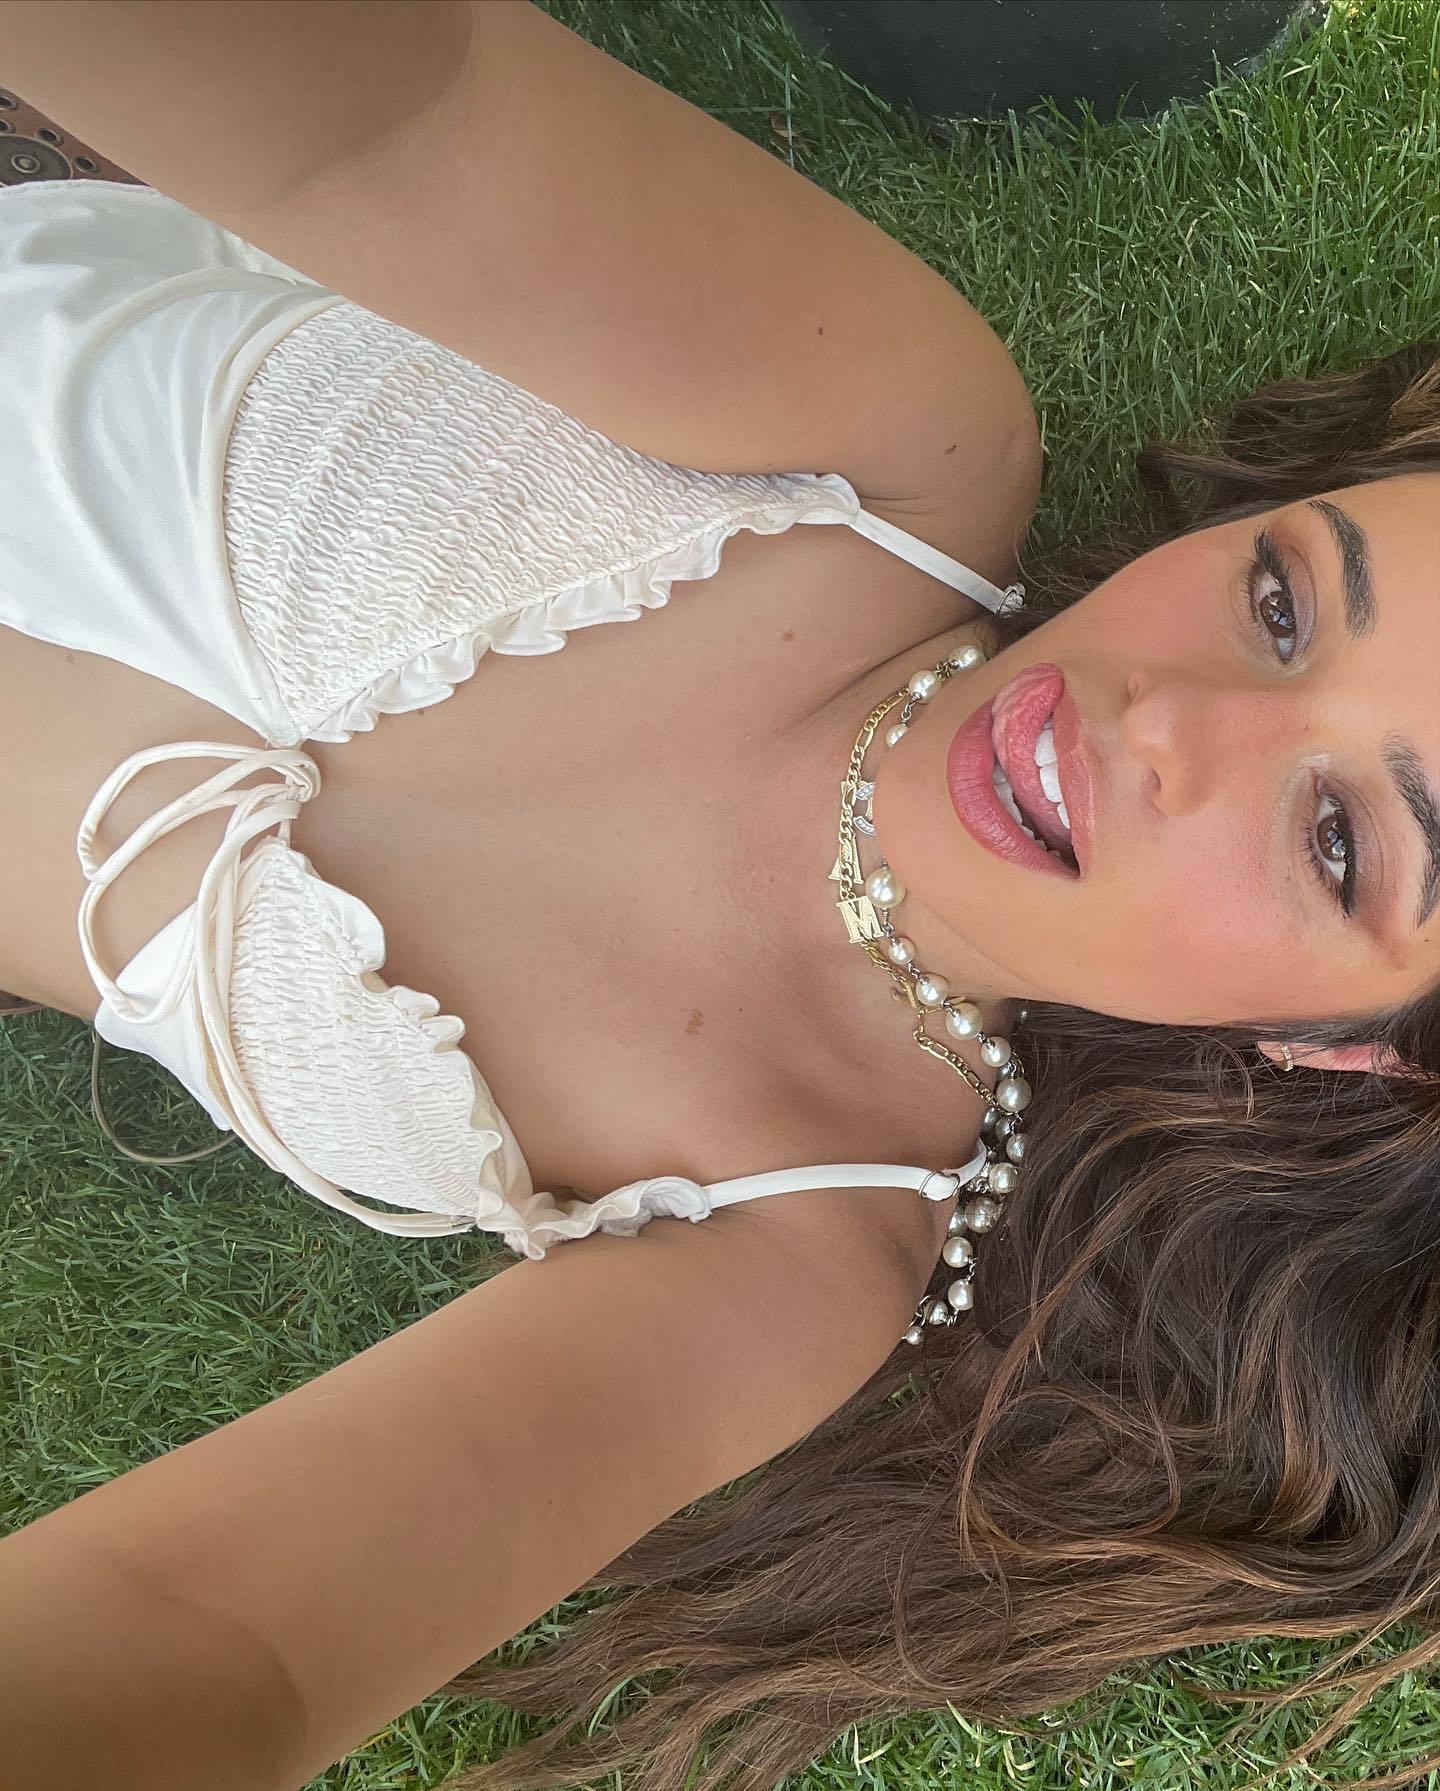 Le selfie en bikini de Camila Cabello ! - Photo 1